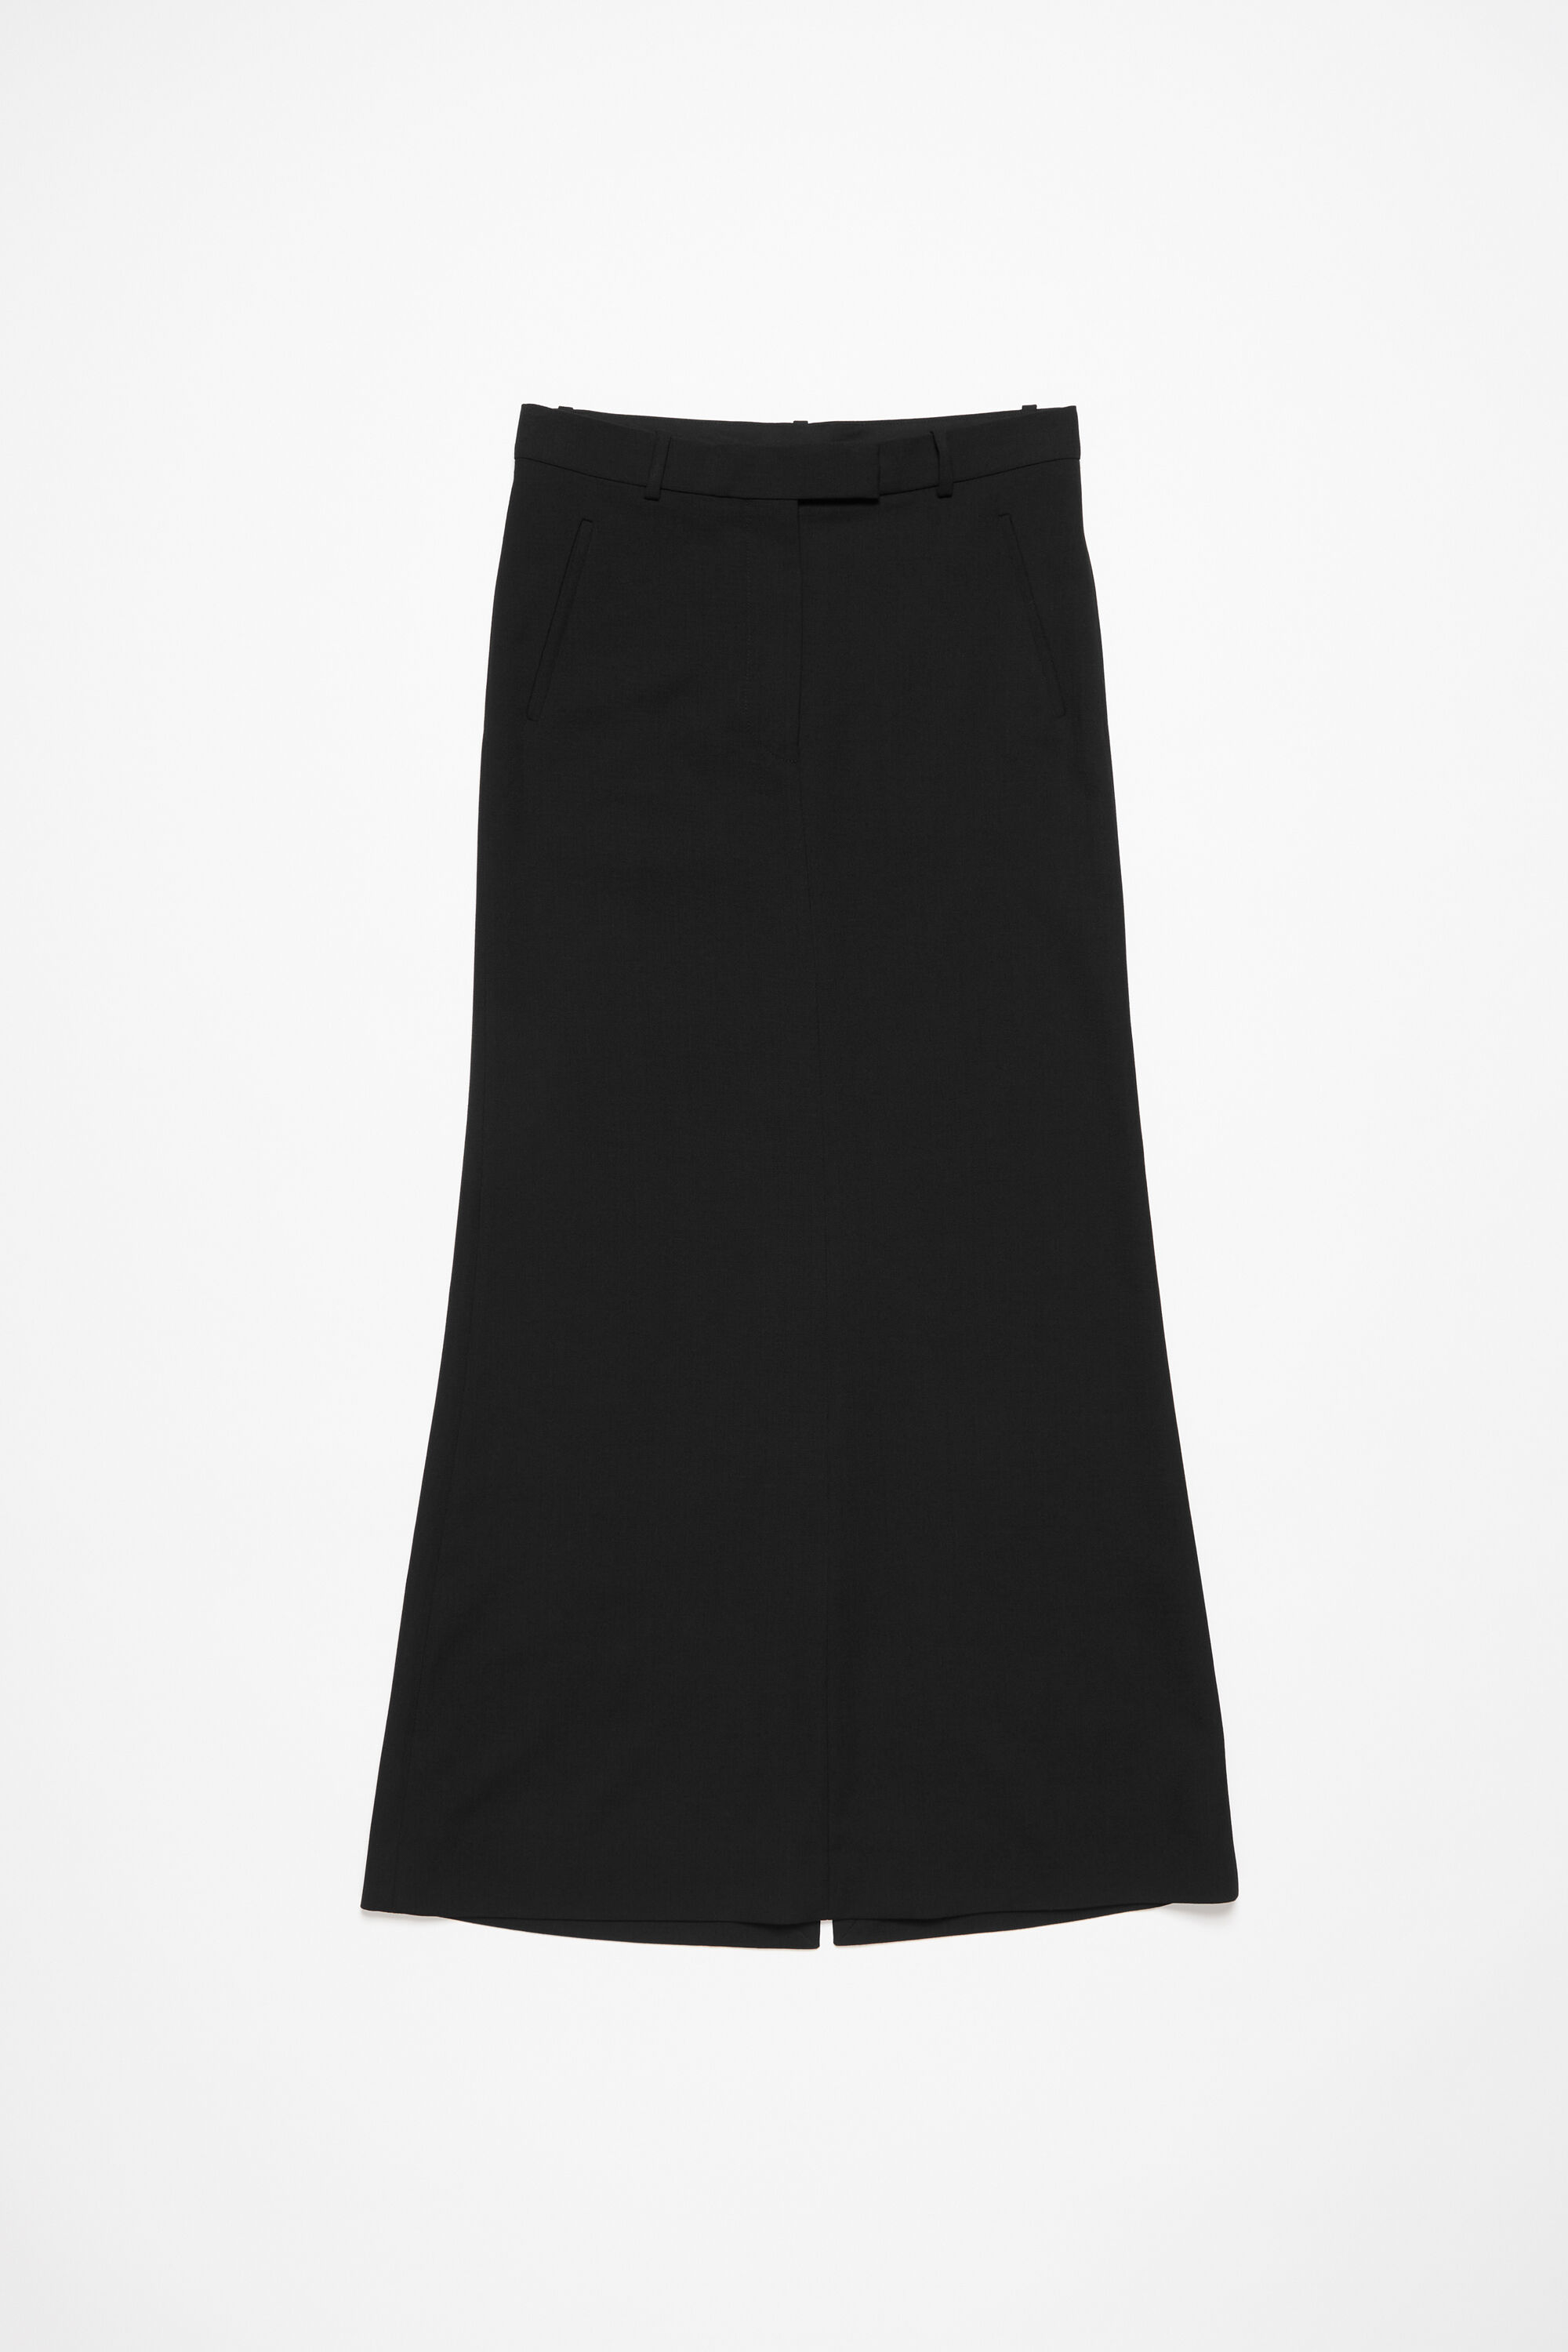 SHOWOFF Black Pencil Mini Skirt